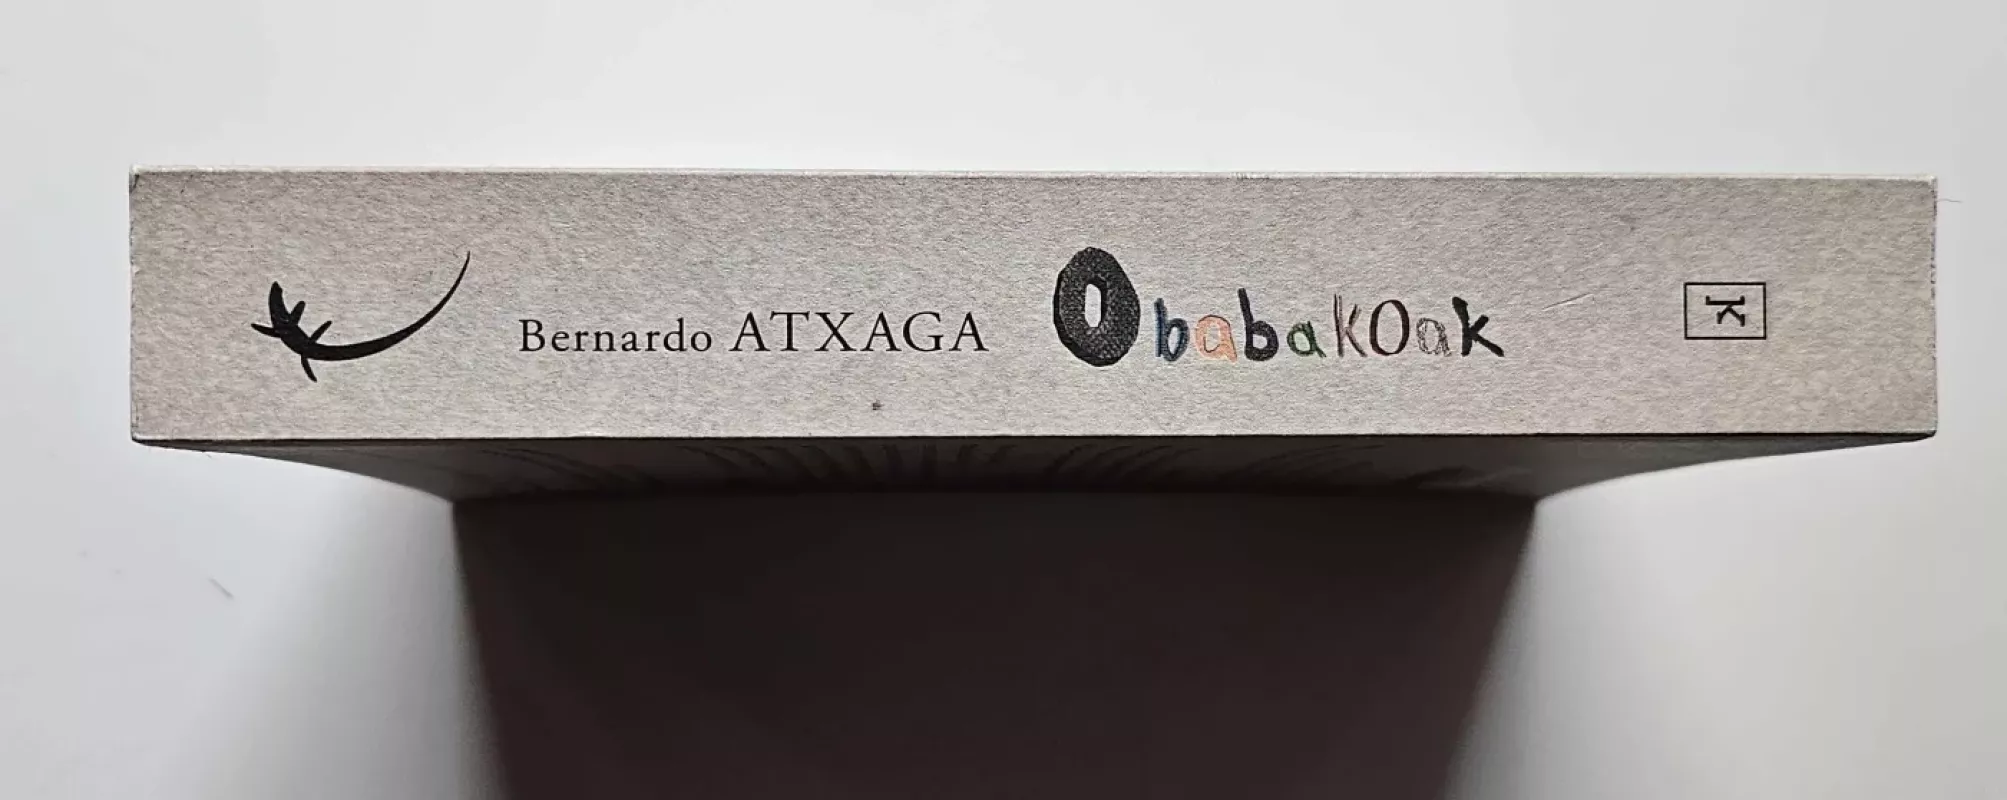 Obabakoak - Bernardo Atxaga, knyga 3